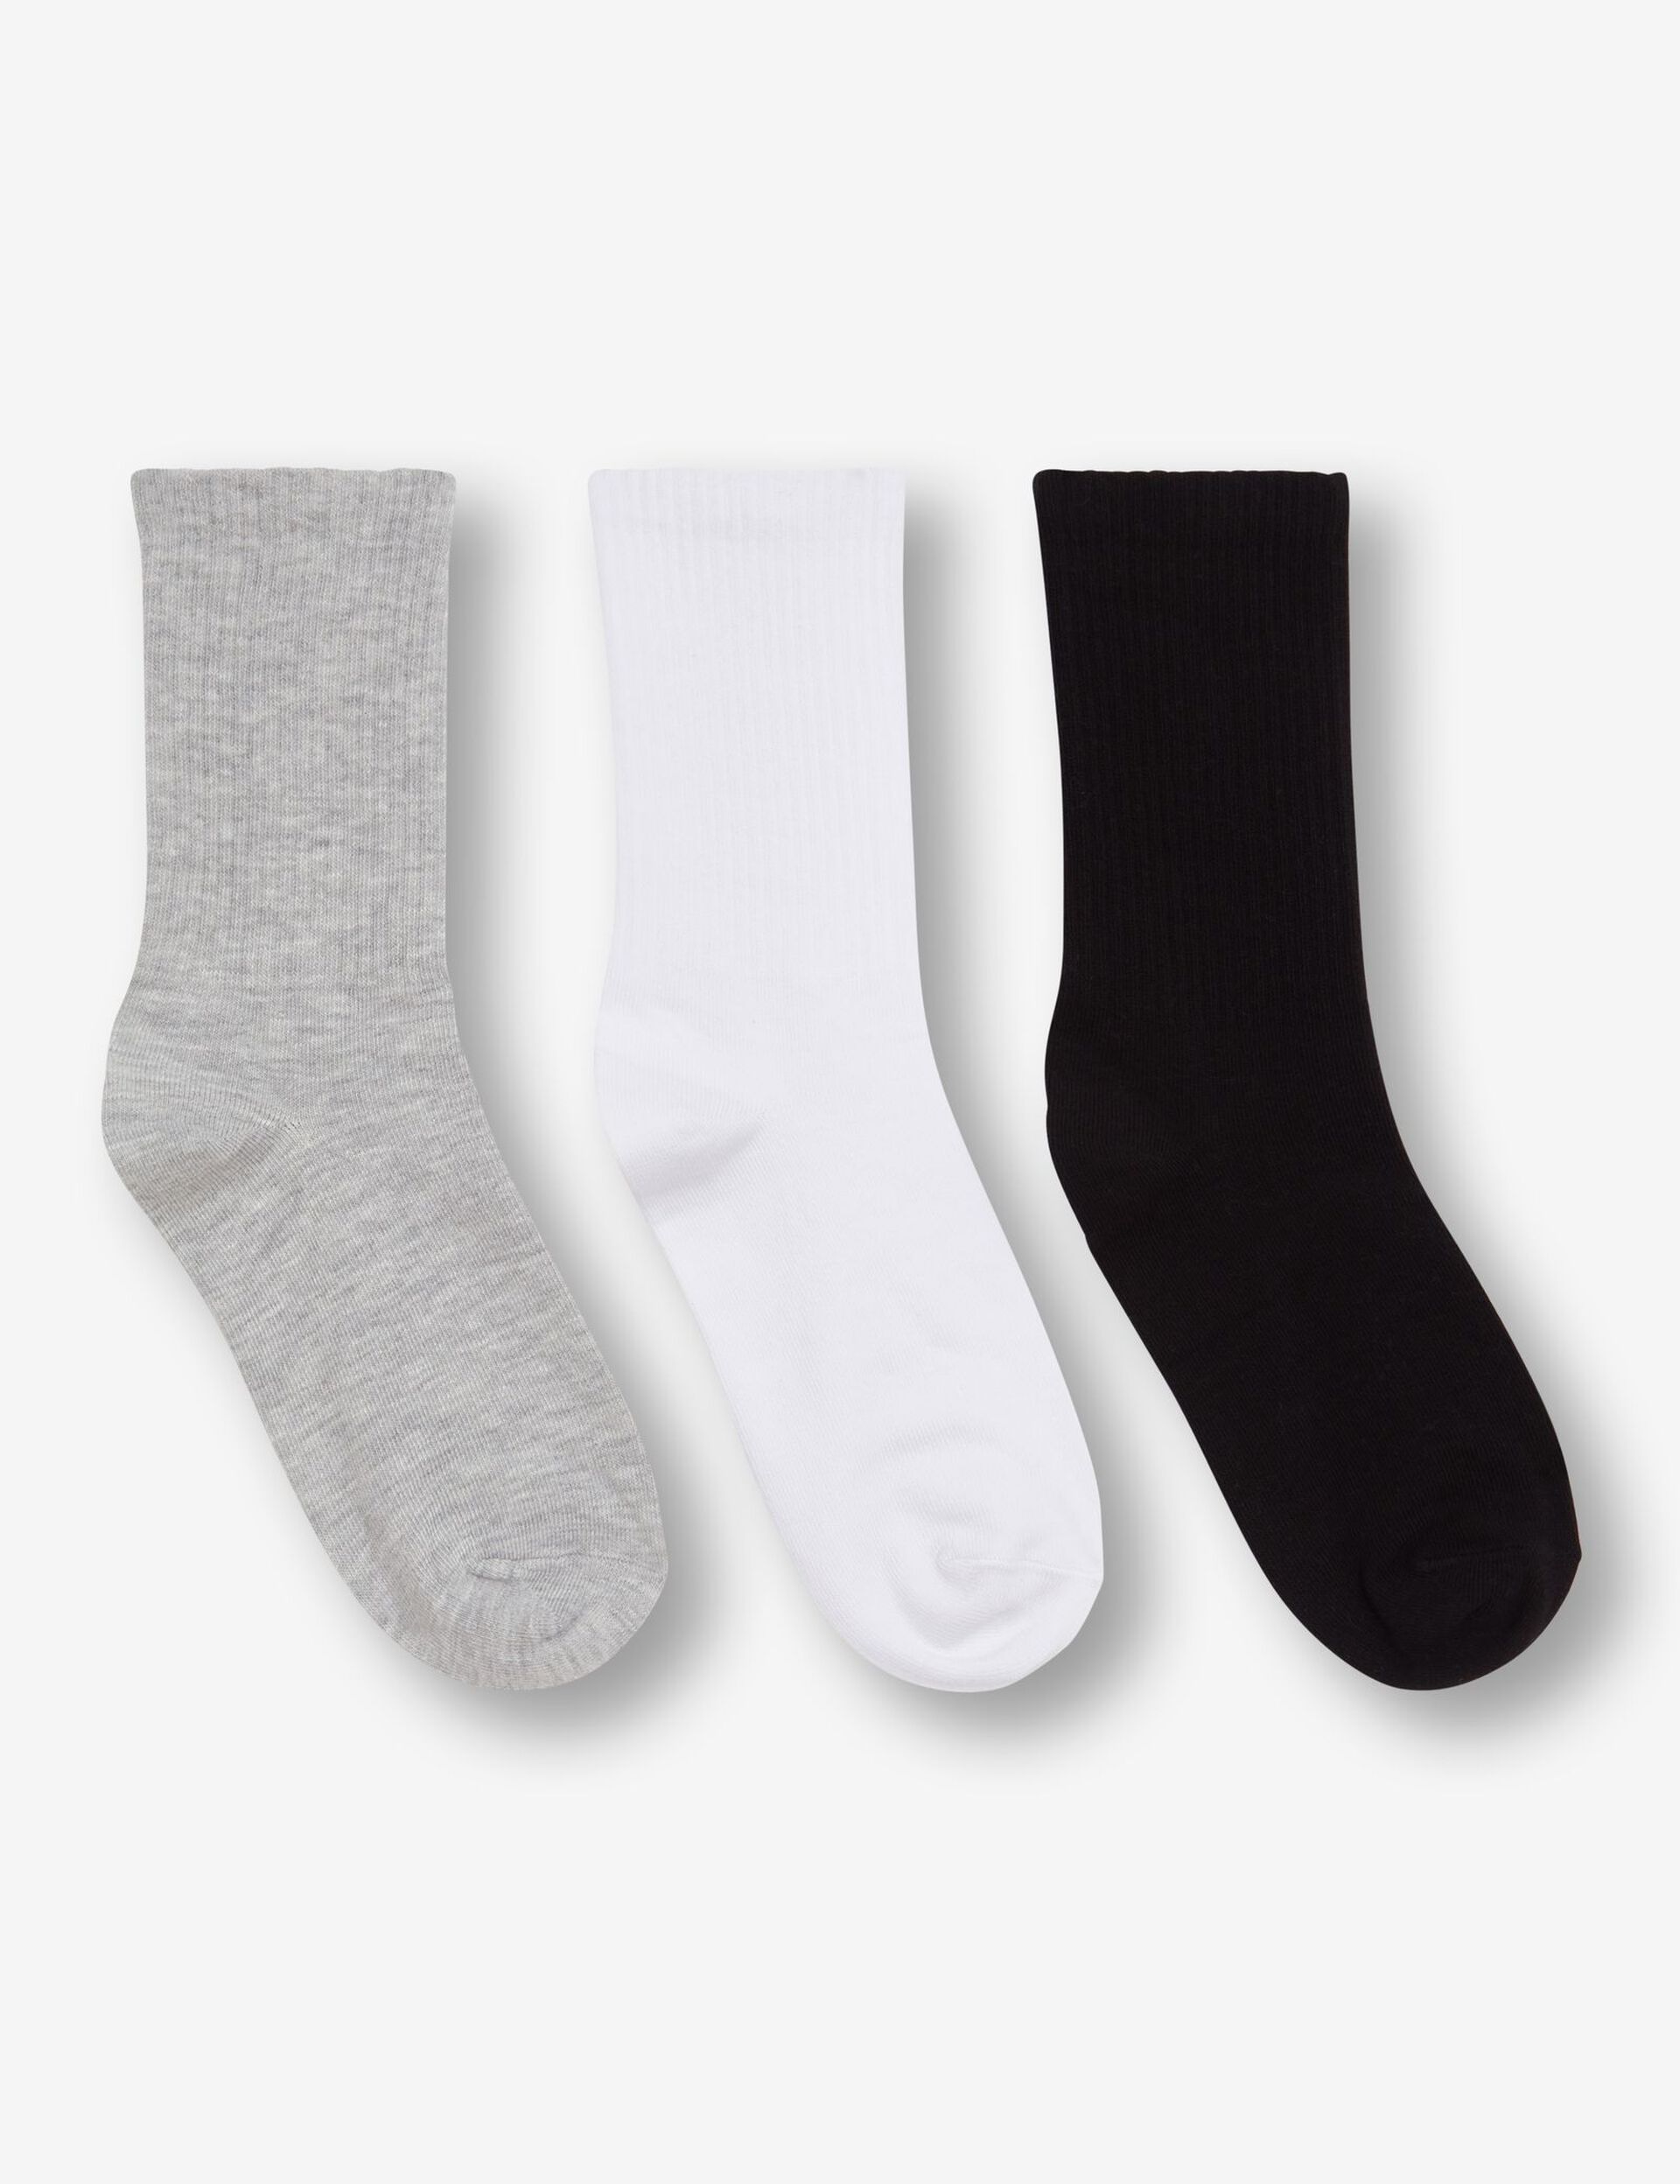 Chaussettes hautes, noires, grises et blanches